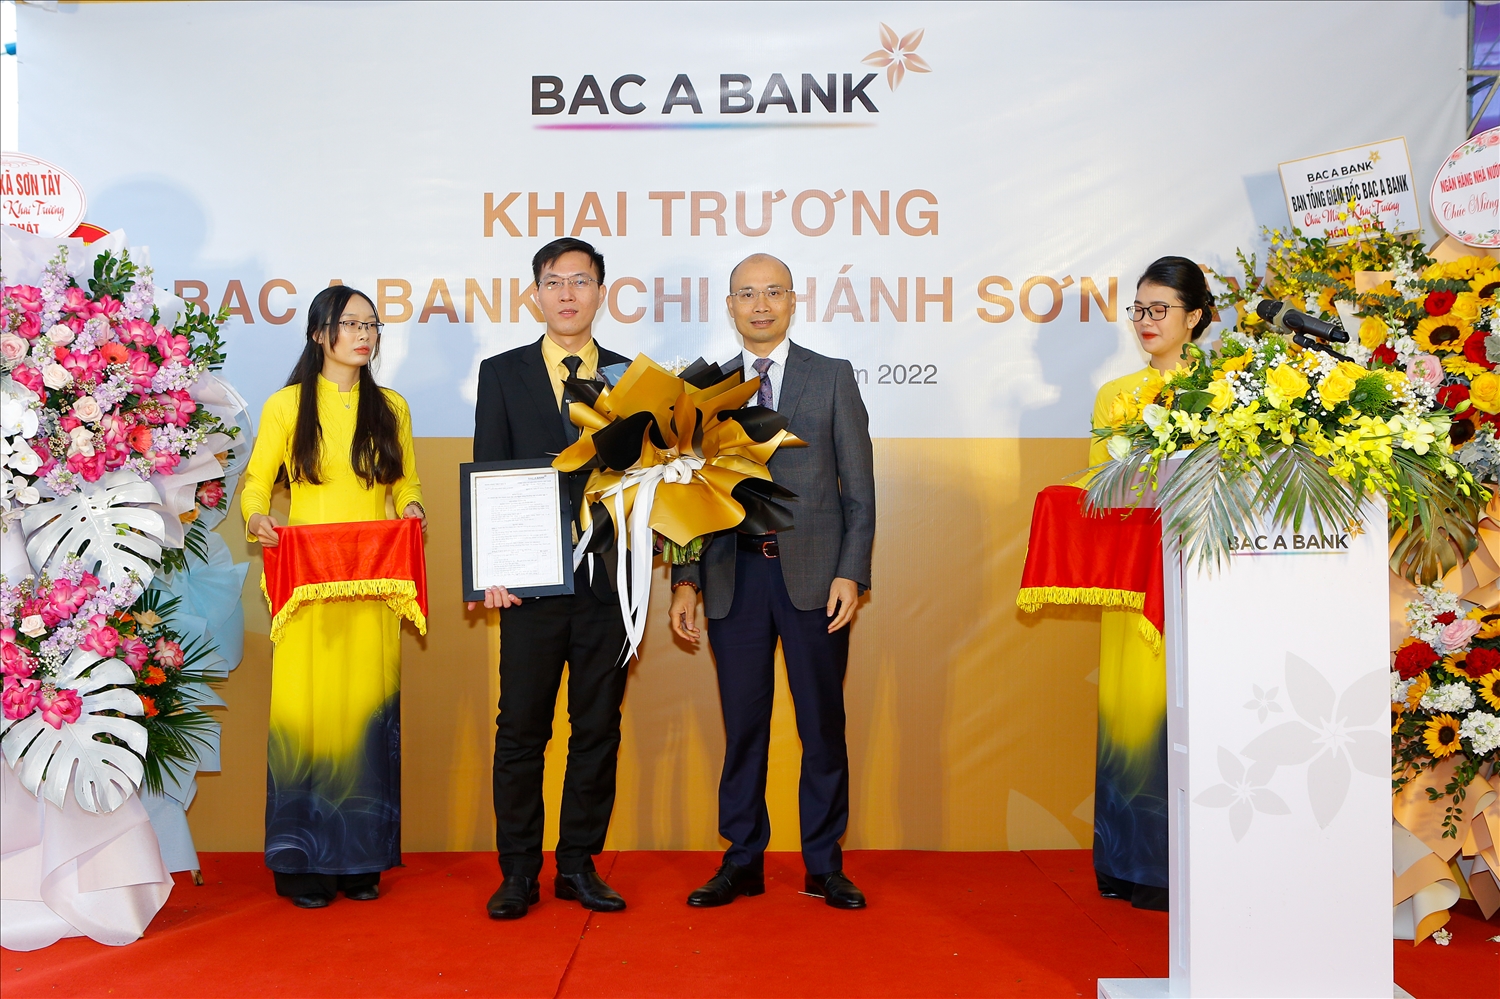 BAC A BANK mở rộng mạng lưới tại cửa ngõ phía Tây thủ đô Hà Nội 2